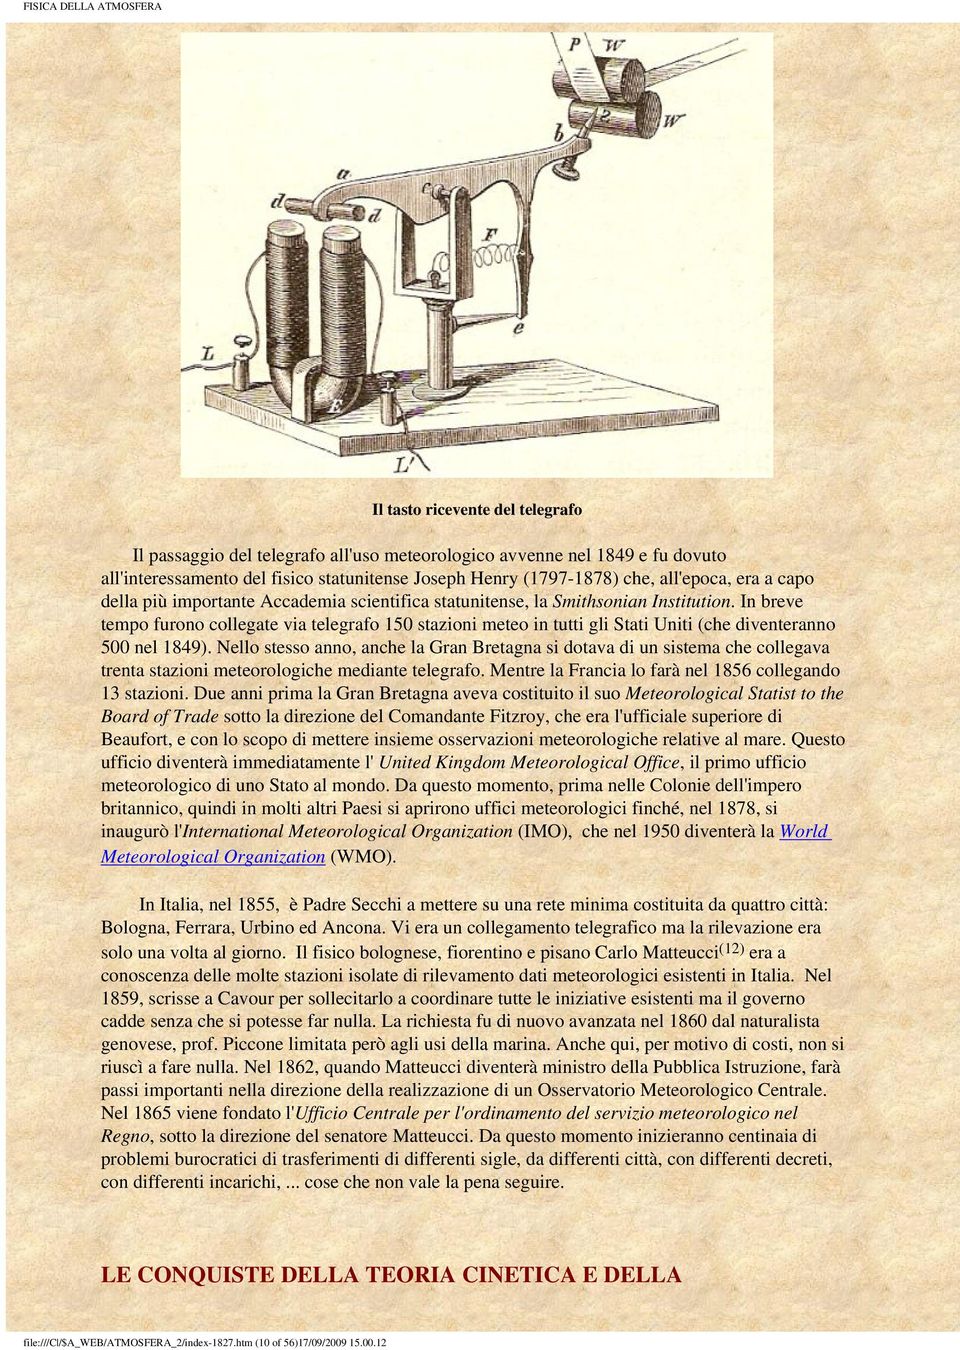 In breve tempo furono collegate via telegrafo 150 stazioni meteo in tutti gli Stati Uniti (che diventeranno 500 nel 1849).